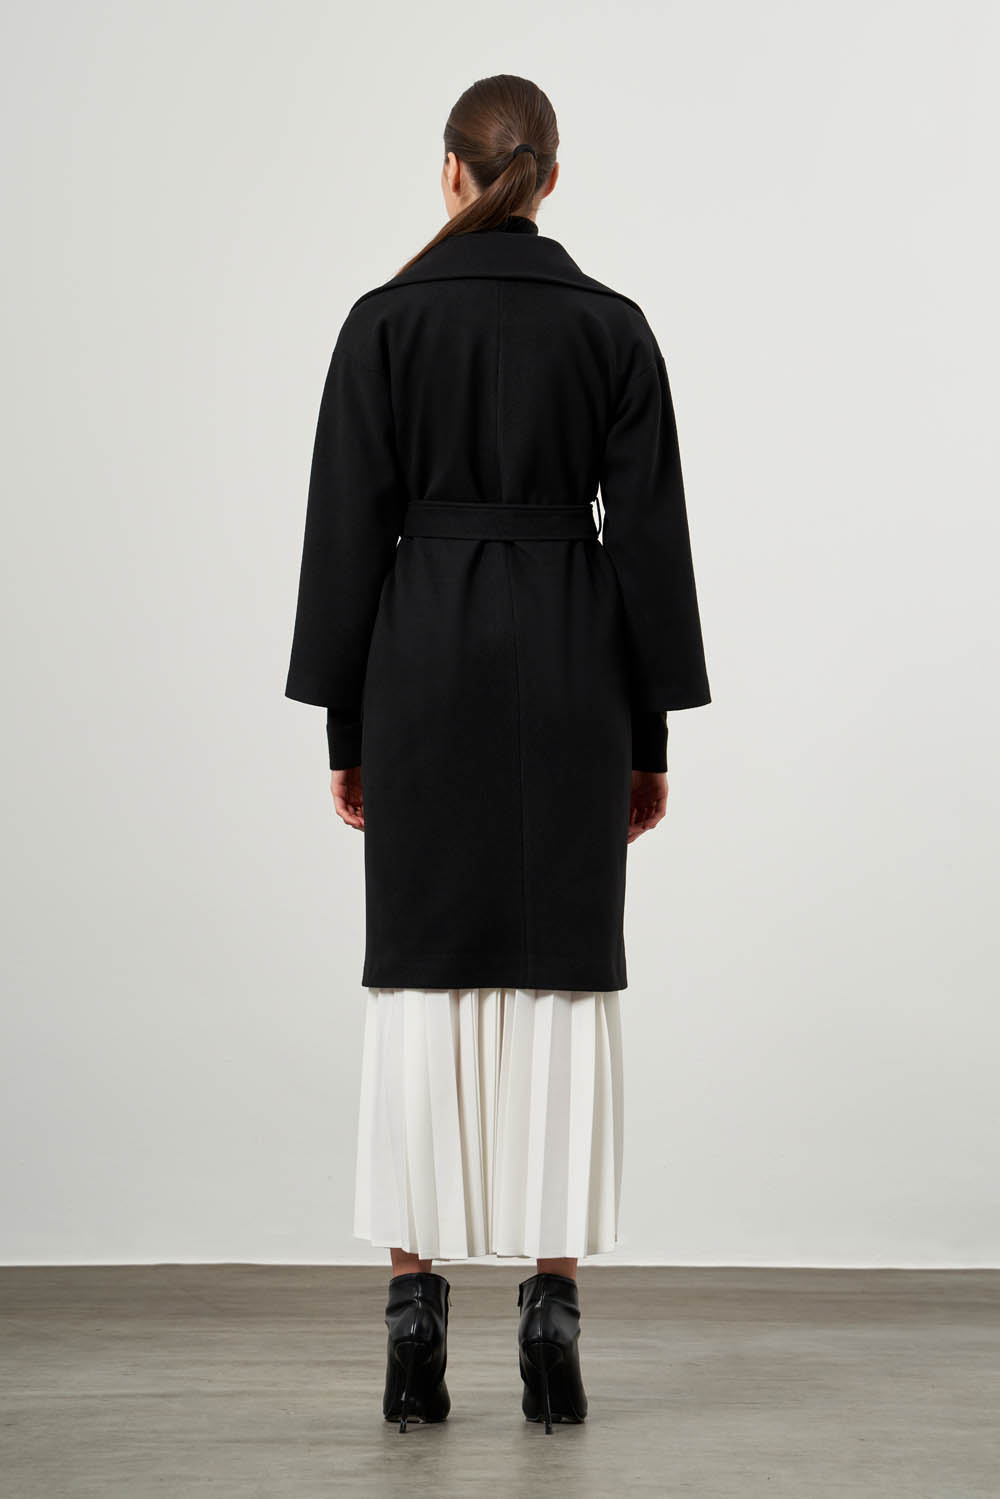 Basic Cachet Textured Black Overcoat